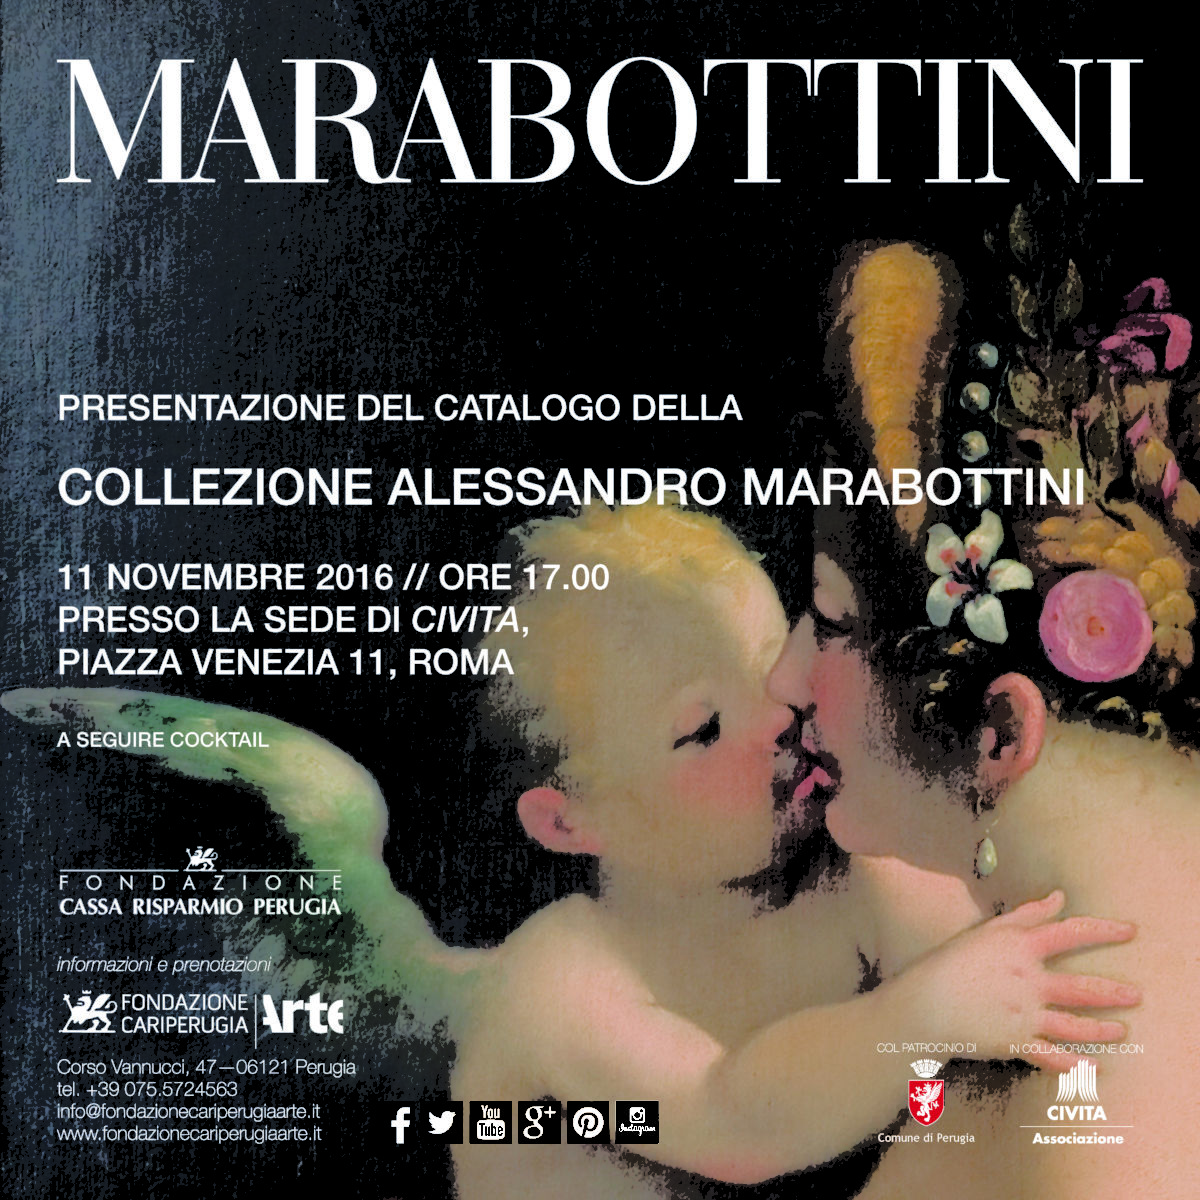 Collezione Alessandro Marabottini: la passione per l’arte dà vita ad un museo e ad un volume che ne racconta storia e curiosità